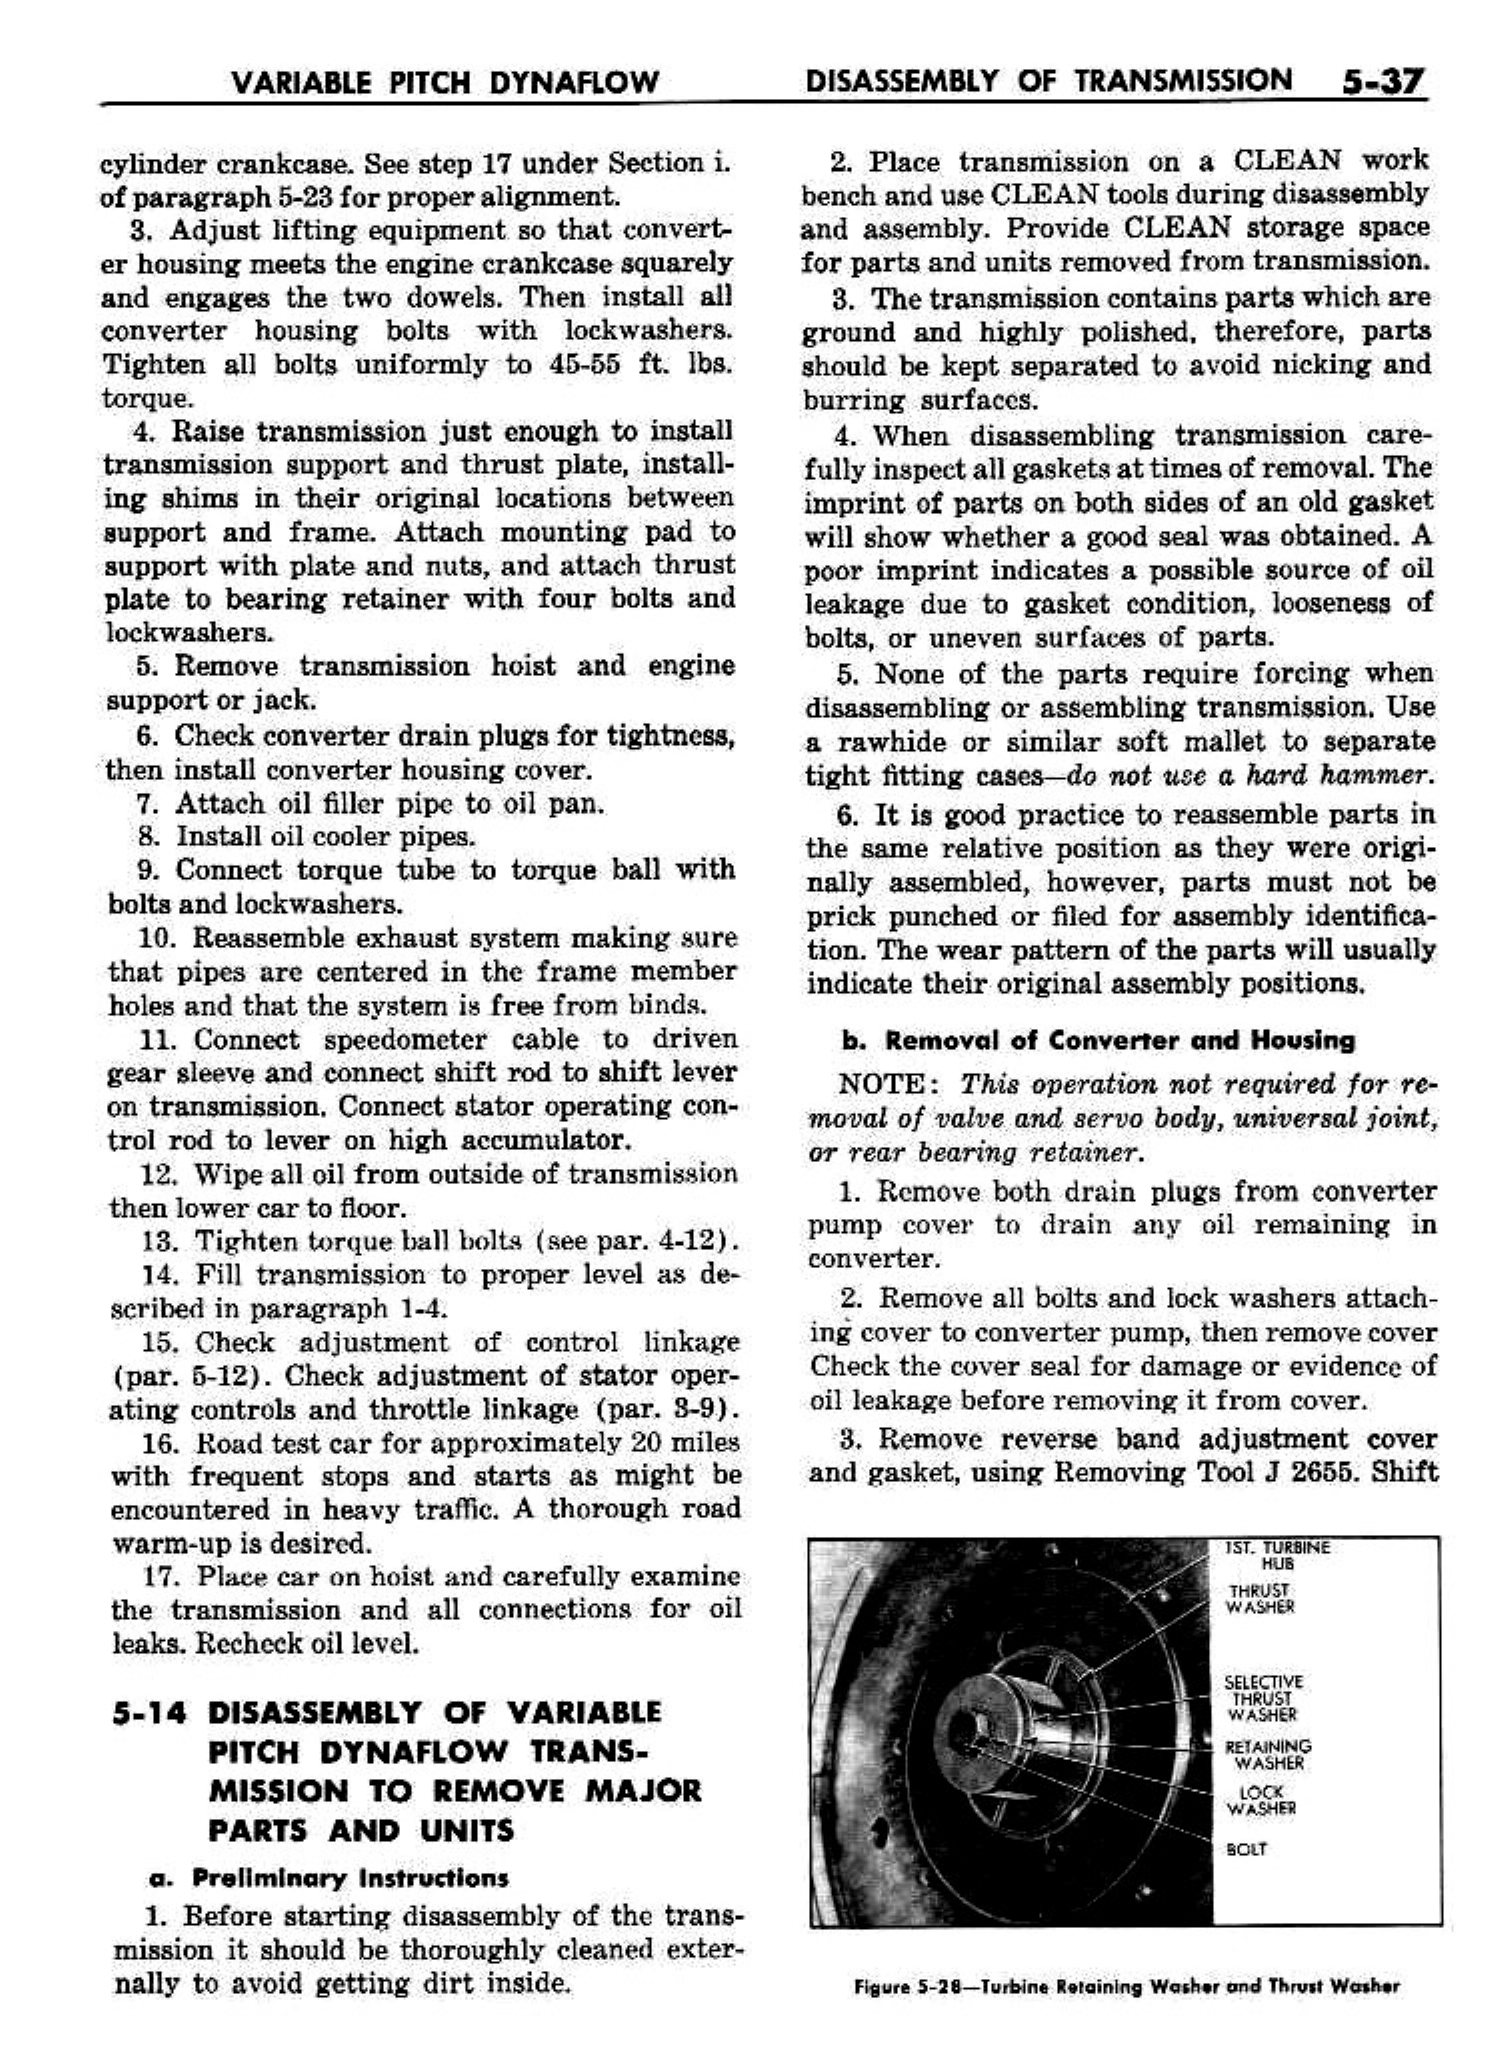 n_06 1958 Buick Shop Manual - Dynaflow_37.jpg